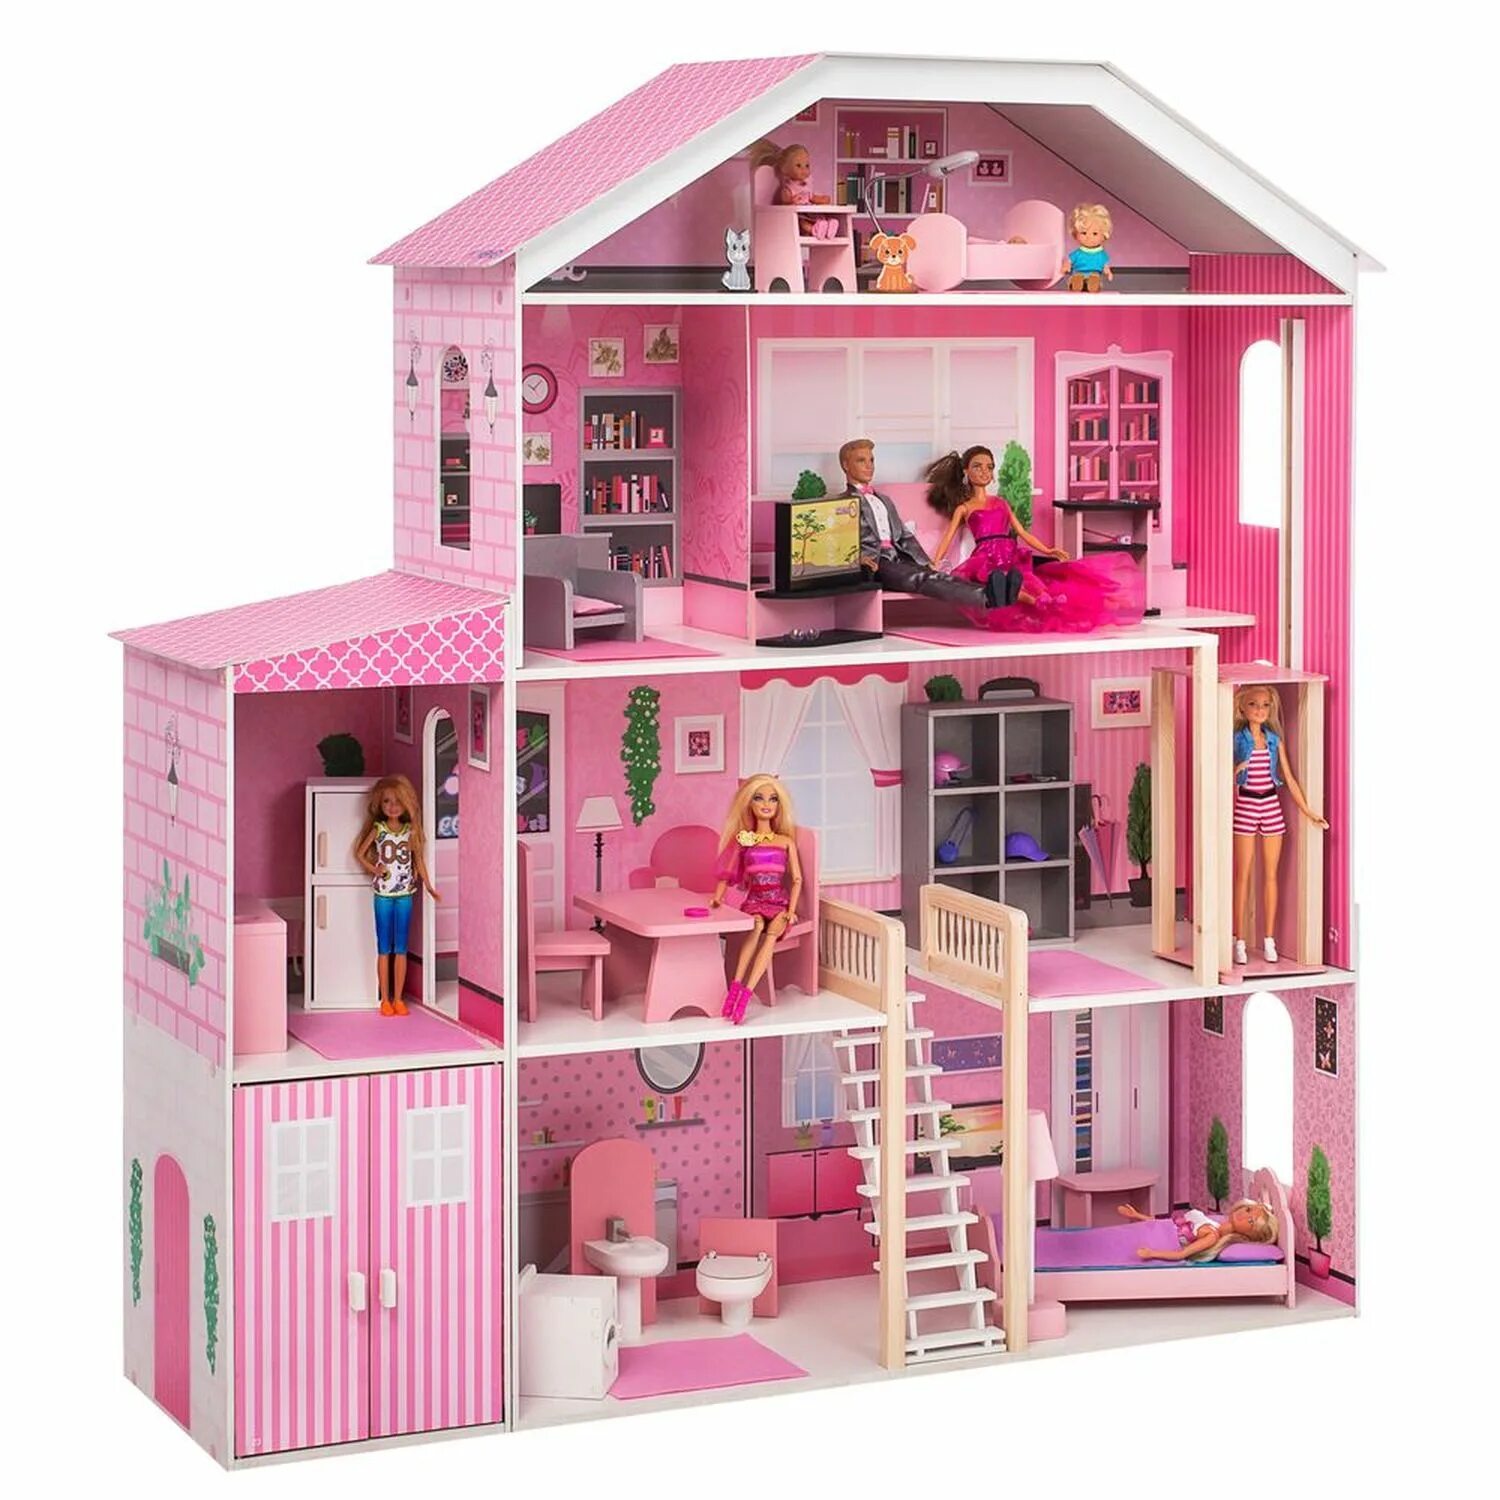 Кукольные дома отзывы. Paremo pd318. Кукольный дом Паремо. Велберис домик Барби. Большой кукольный домик для Барби.